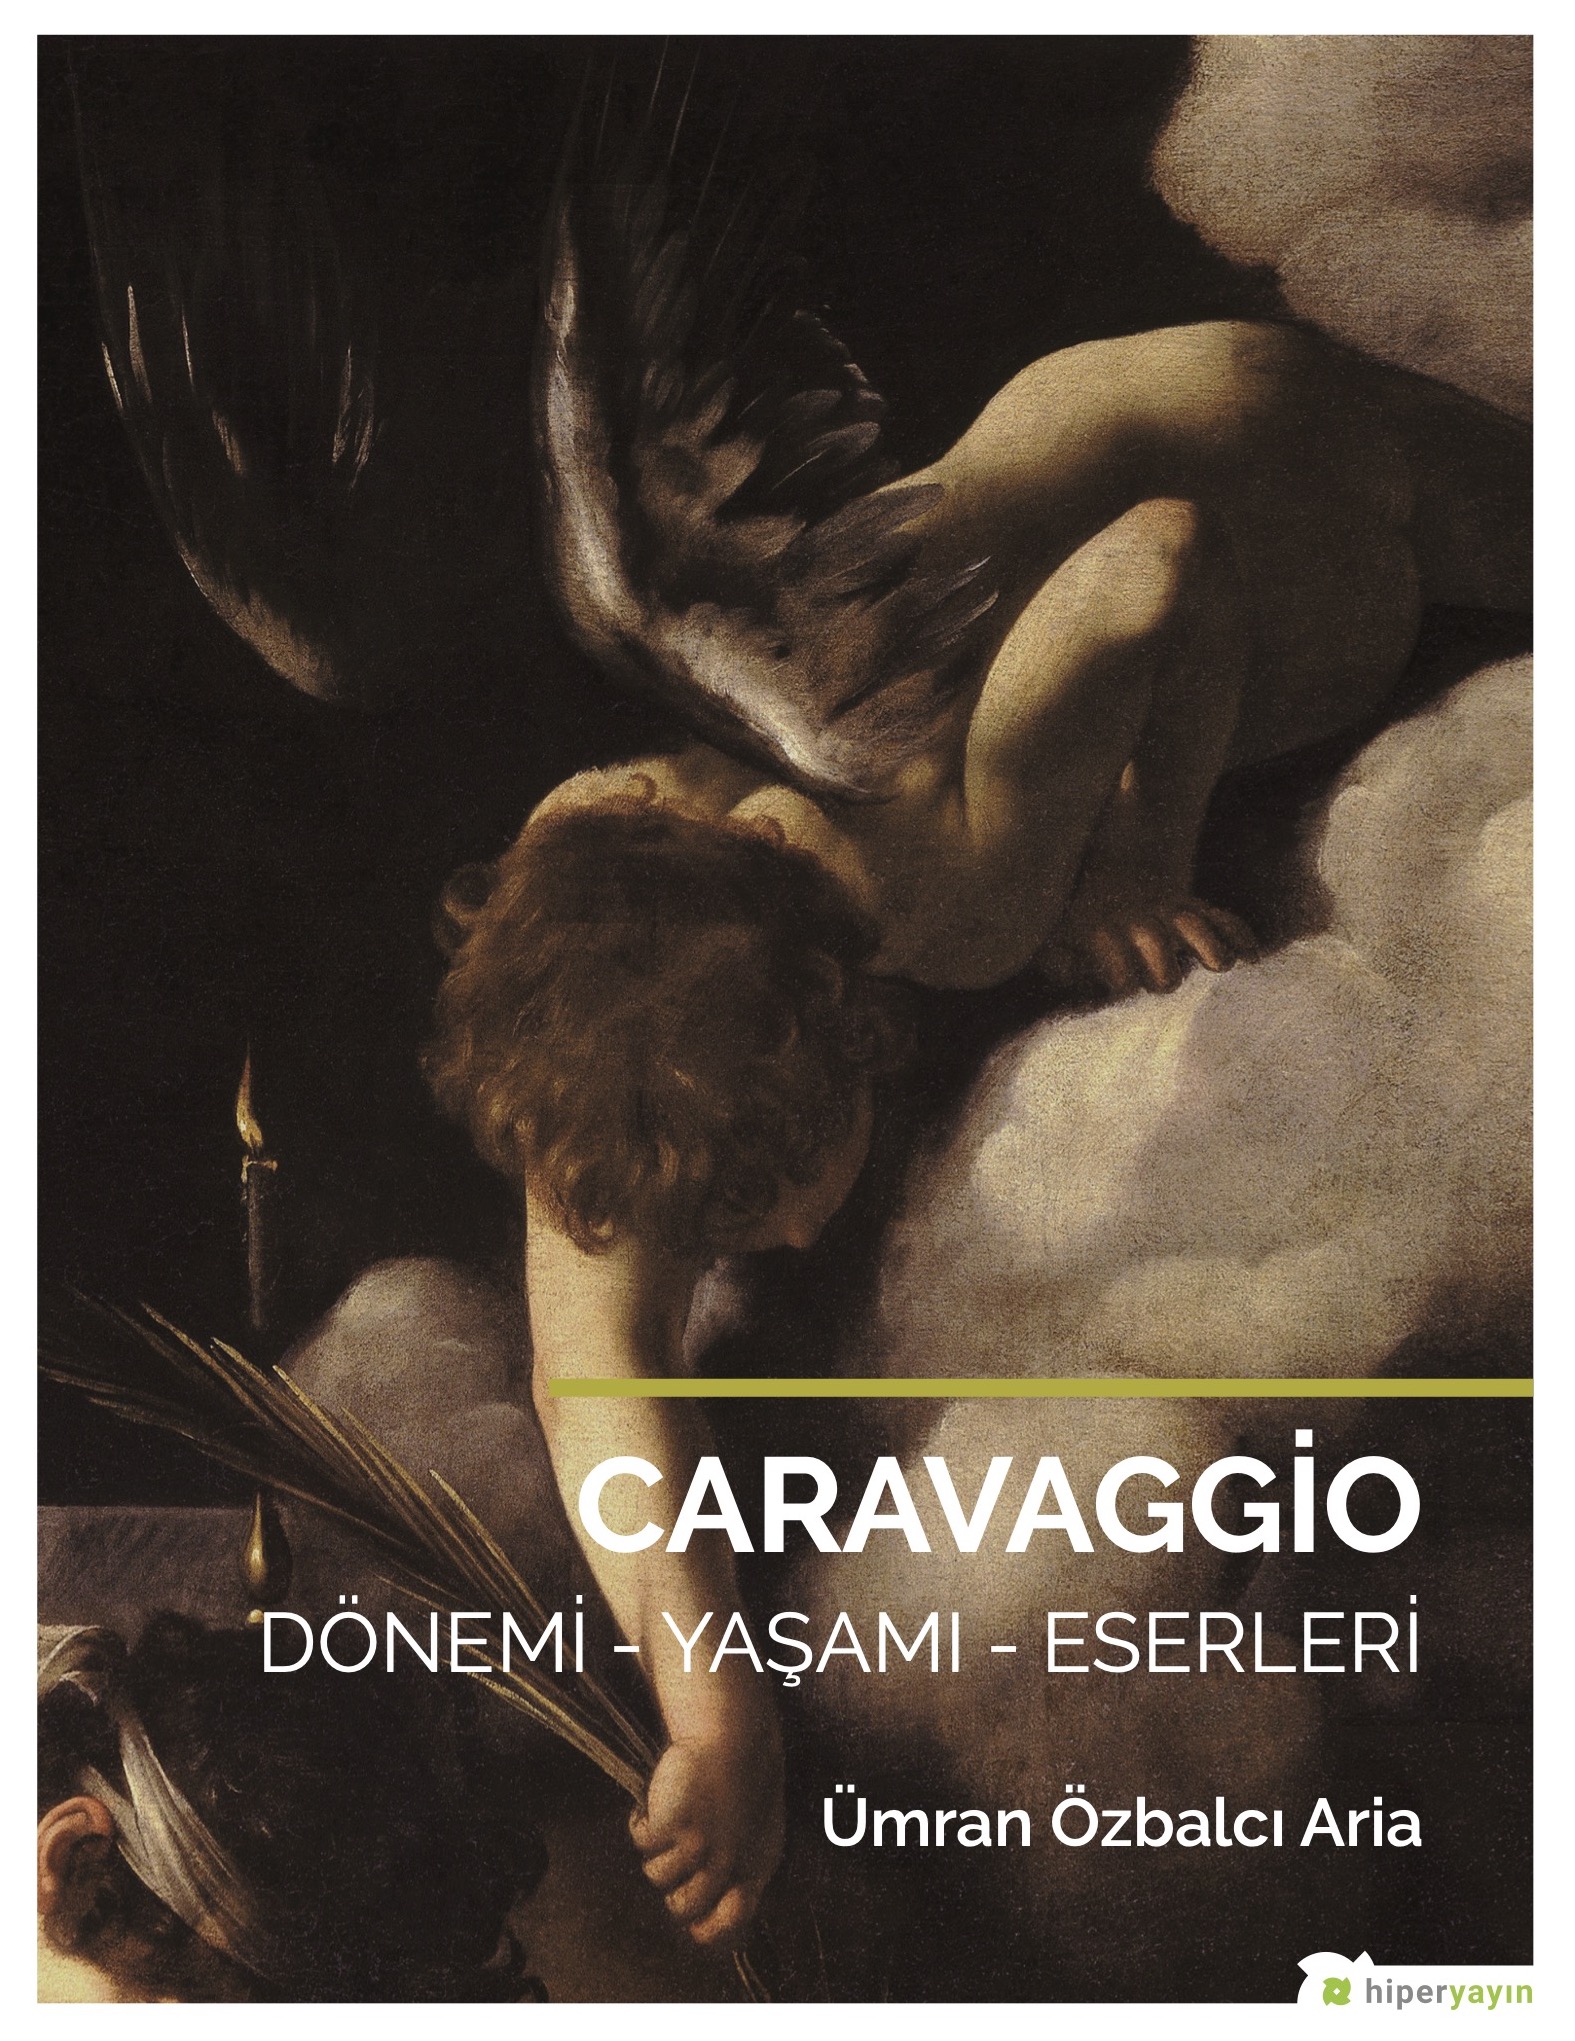 Caravaggio Dönemi - Yaşamı - Eserleri